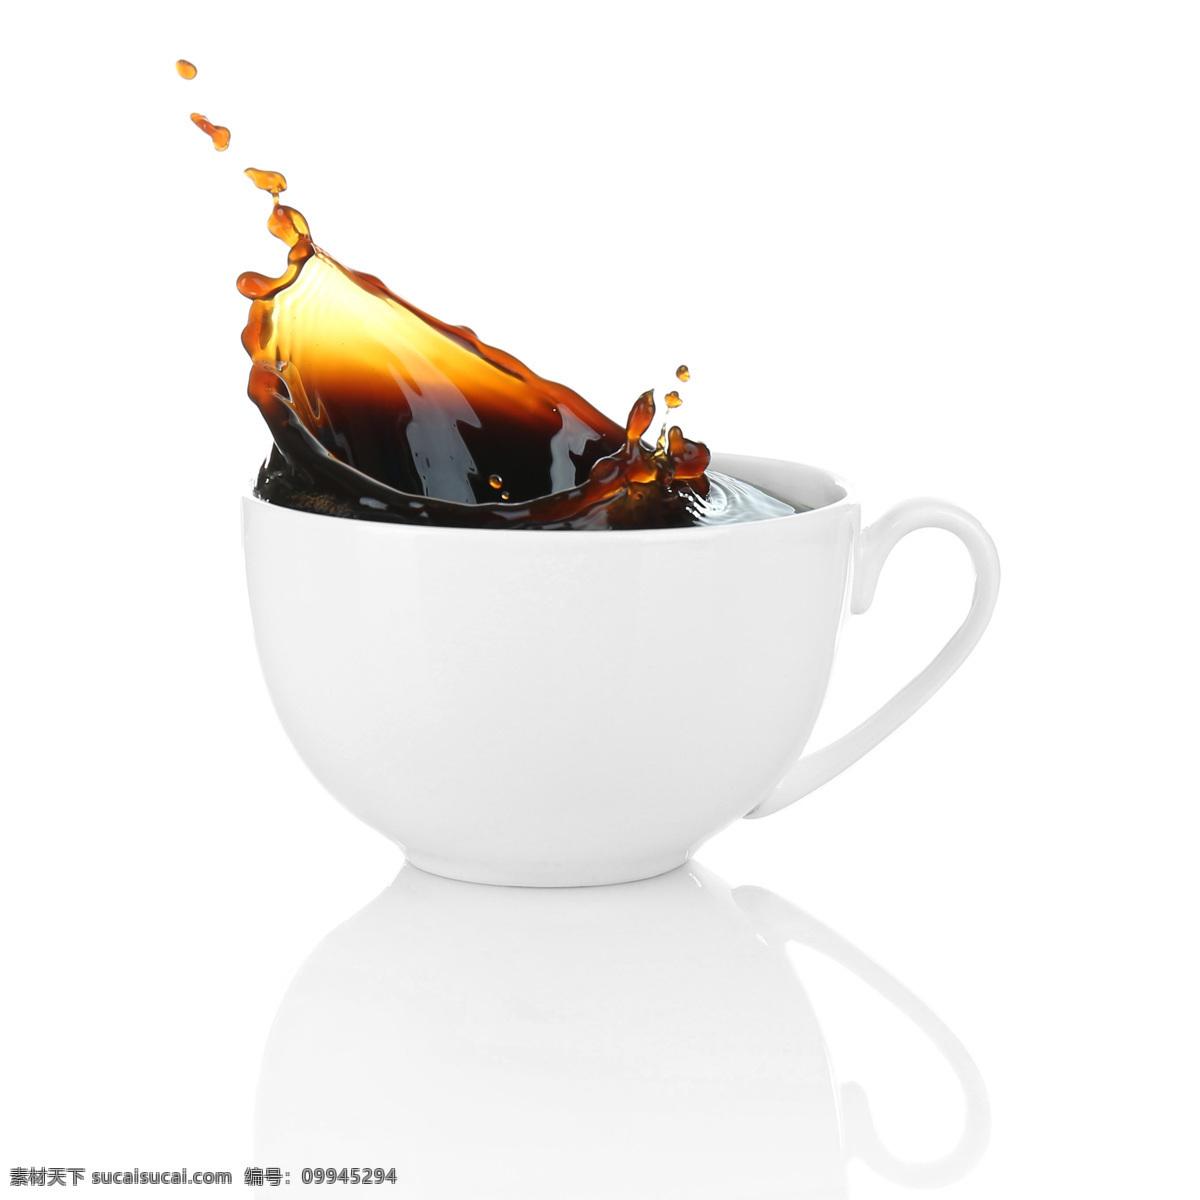 动感 香 浓 咖啡 动感香浓咖啡 咖啡杯 coffee 浓咖啡 酒水饮料 香浓的咖啡 咖啡饮料 咖啡图片 餐饮美食